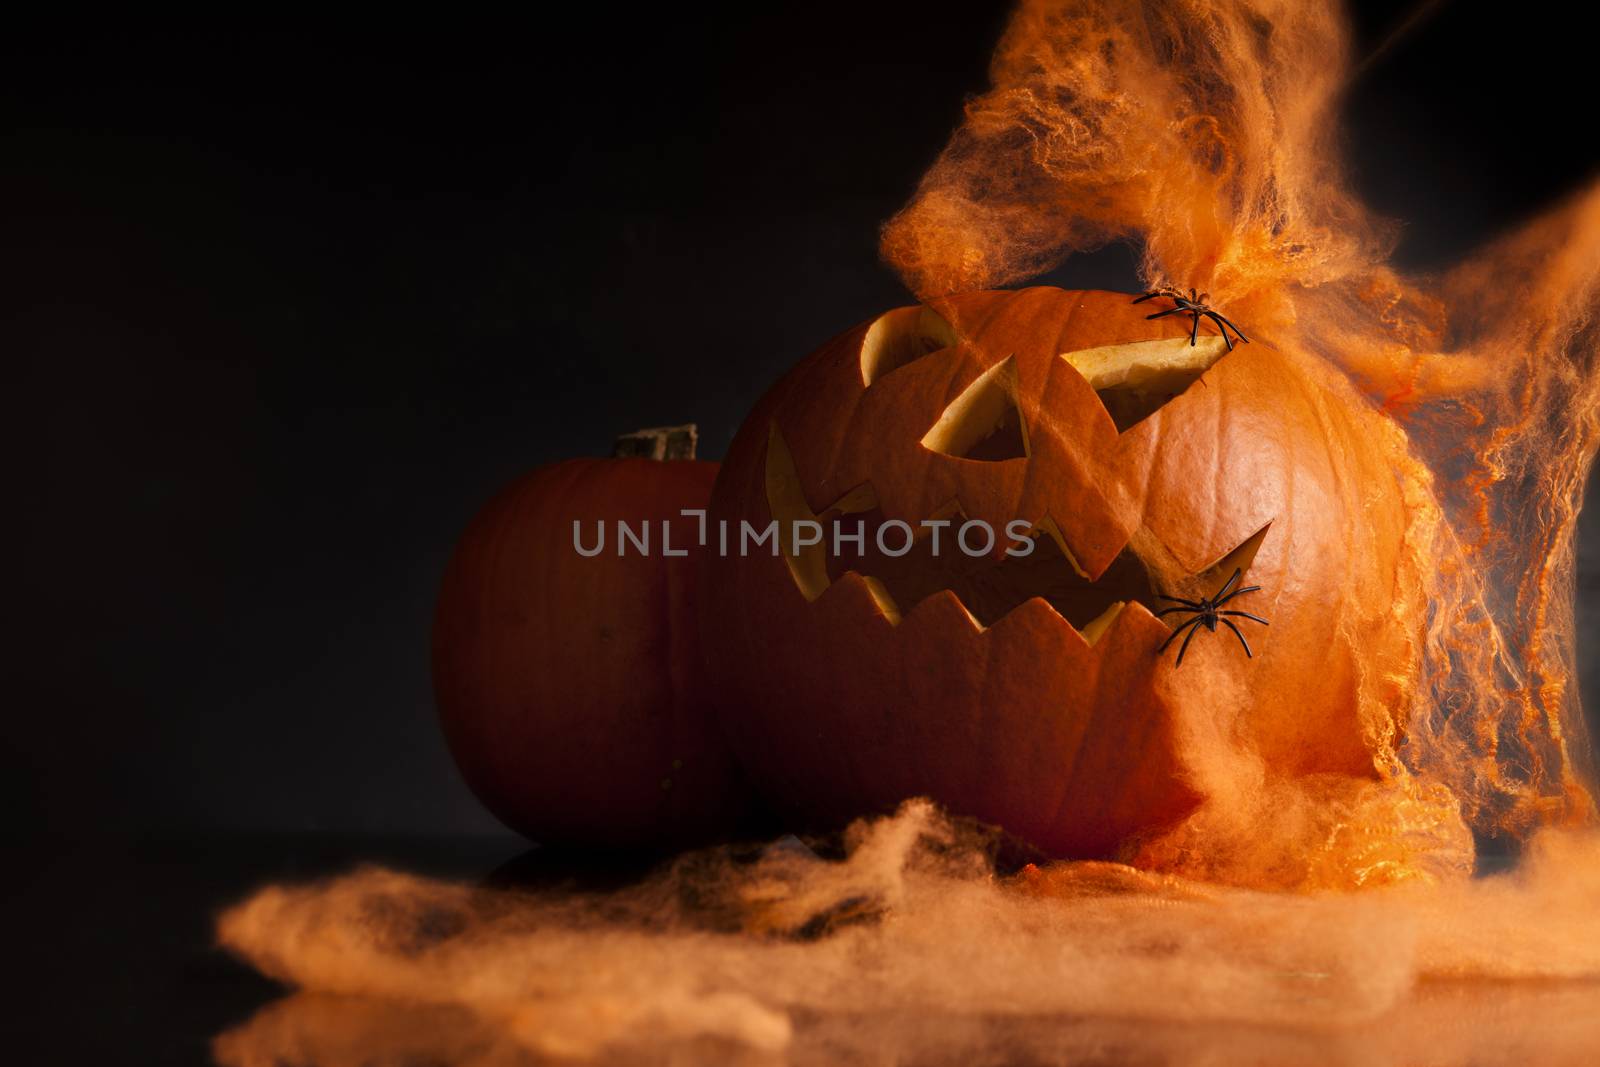 halloween pumpkin by oleandra